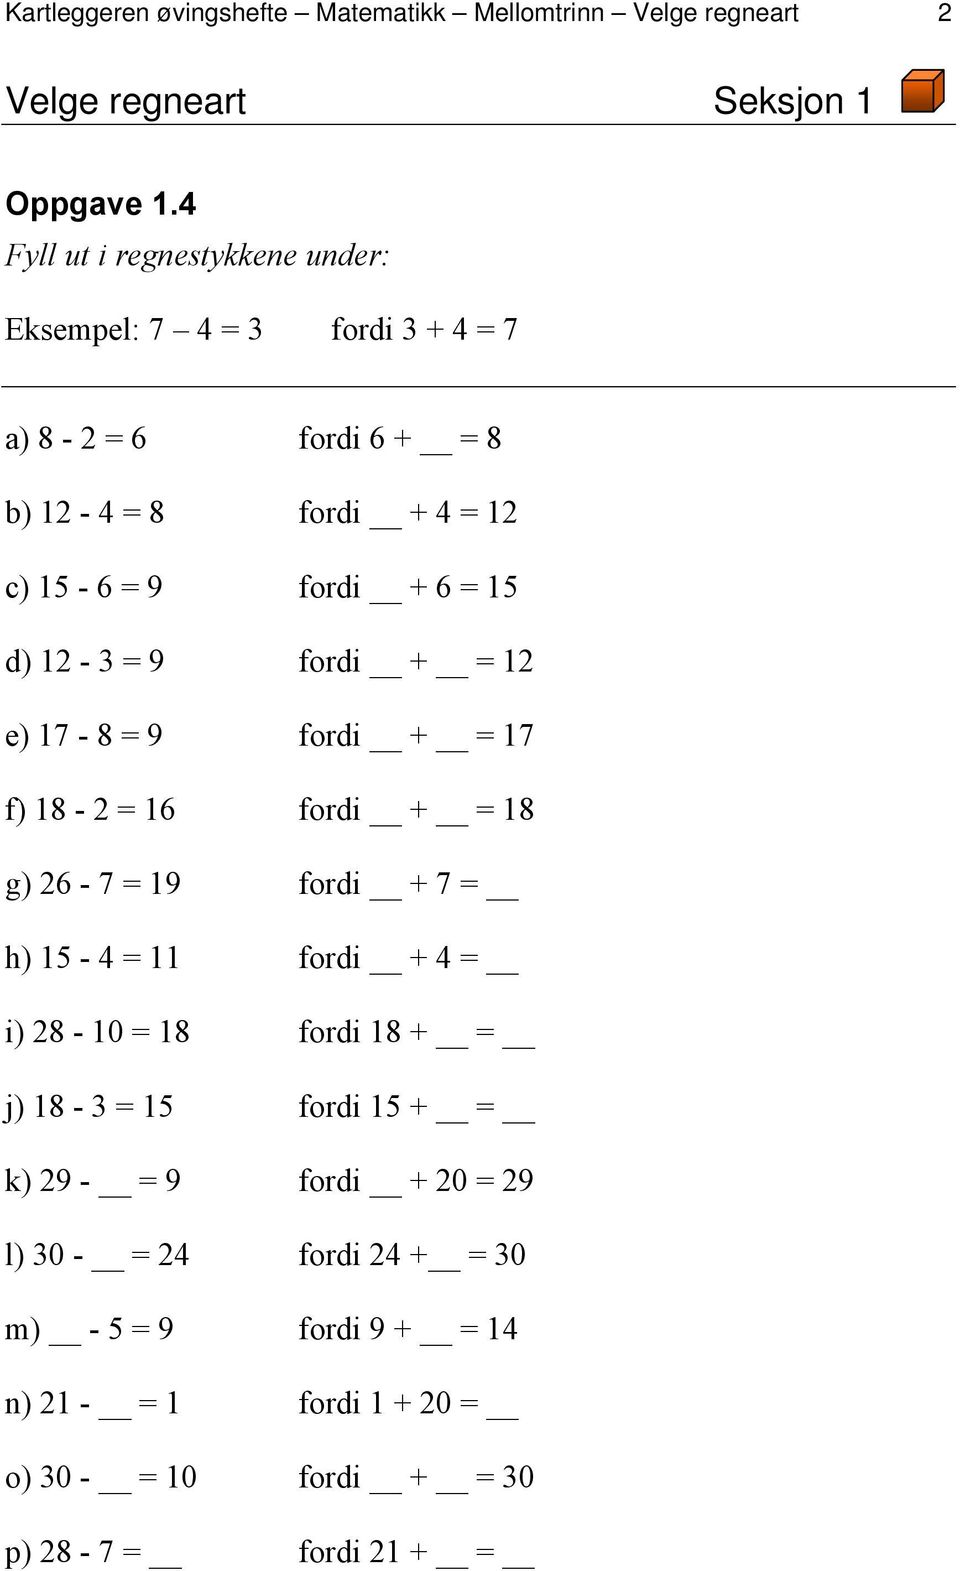 d) 12-3 = 9 fordi + = 12 e) 17-8 = 9 fordi + = 17 f) 18-2 = 16 fordi + = 18 g) 26-7 = 19 fordi + 7 = h) 15-4 = 11 fordi + 4 = i) 28-10 = 18 fordi